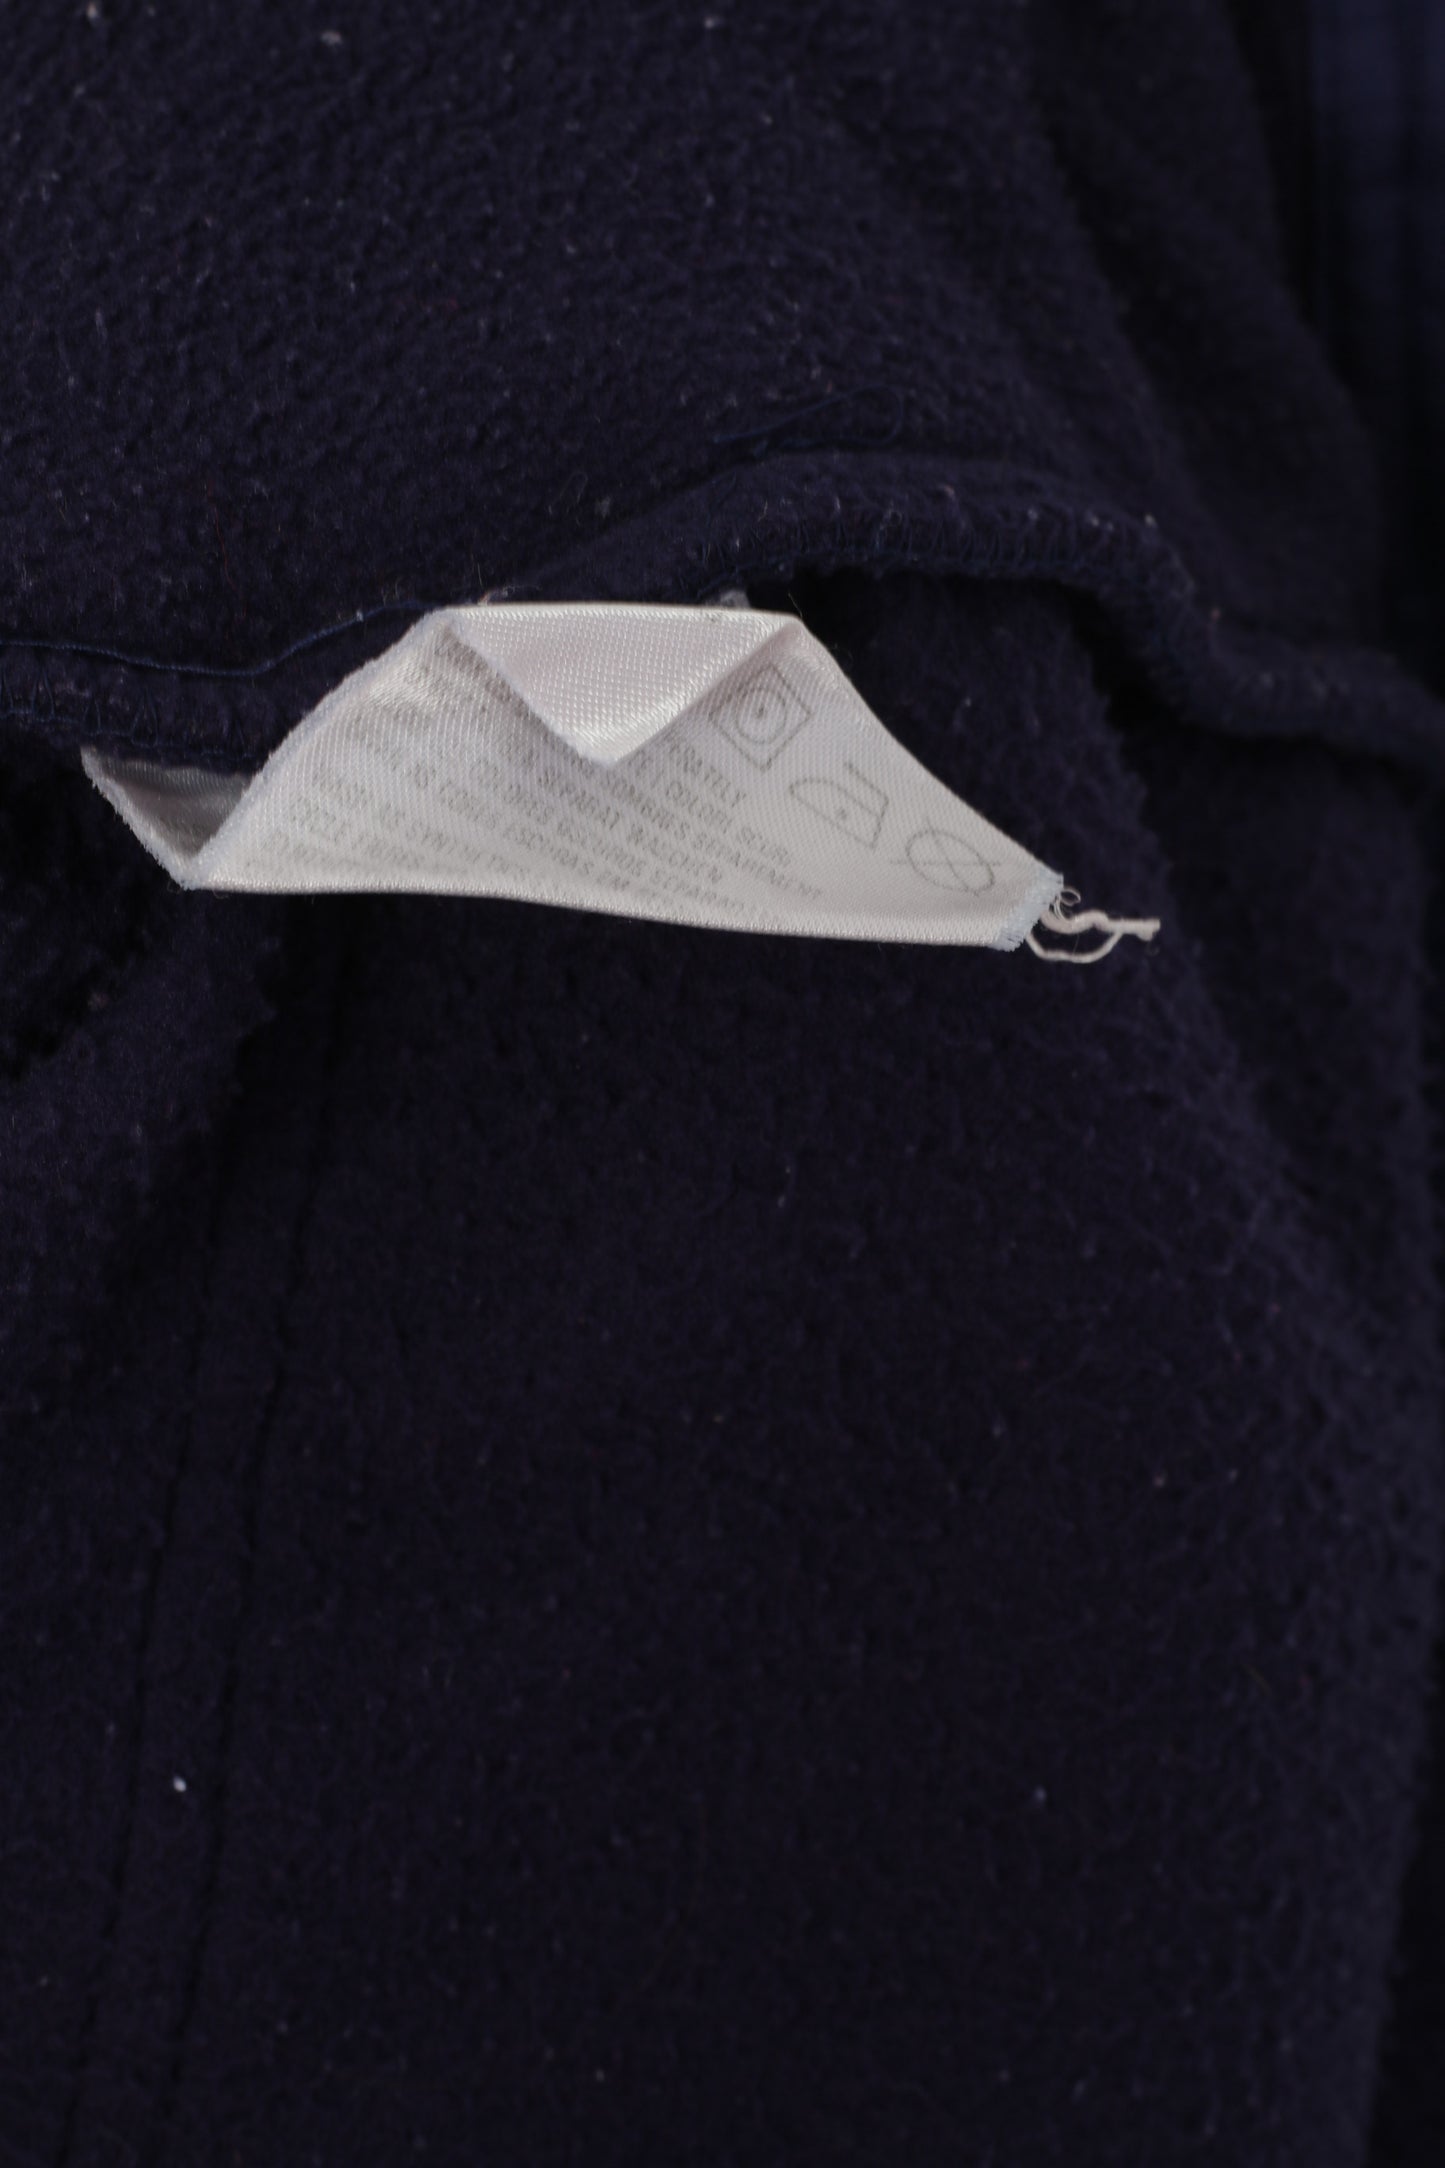 Ellesse Men M Fleece Jacket Purple Full Zipper Sportswear Vintage Sweatshirt Top